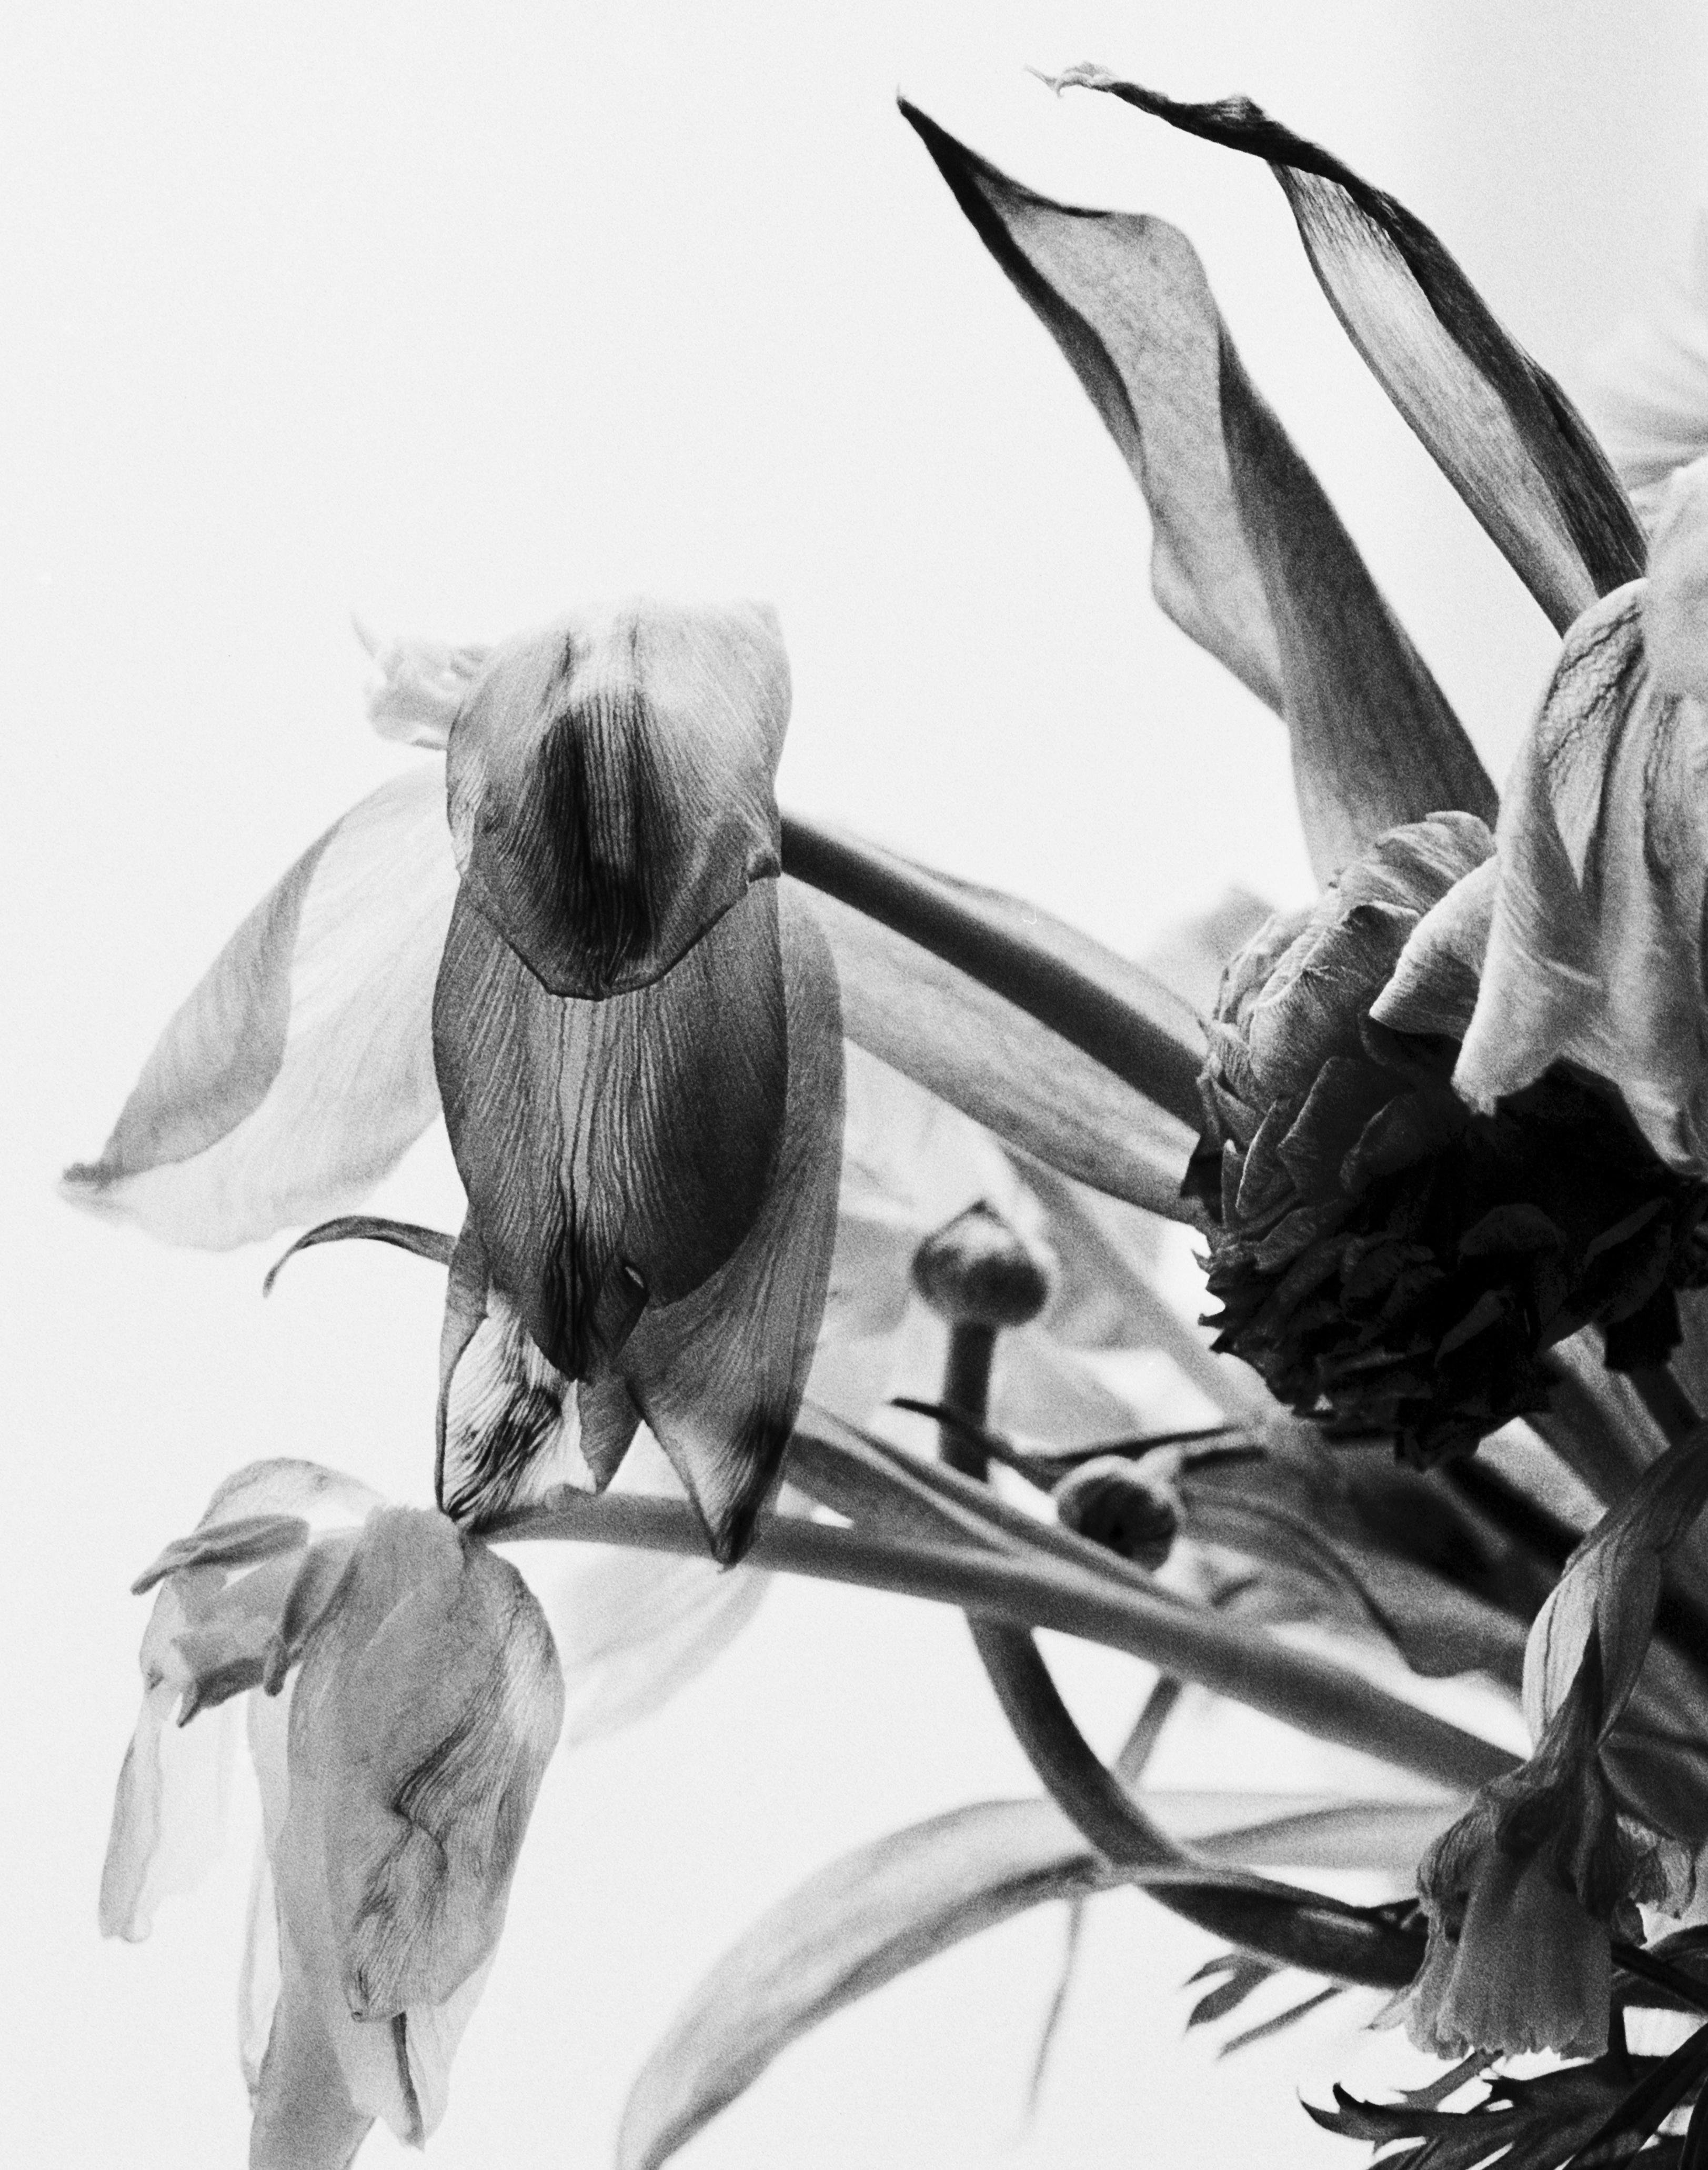 Dead Blumen, Schwarz-Weiß- analoge Blumenfotografie, limitierte Auflage von 20 Stück – Photograph von Ugne Pouwell